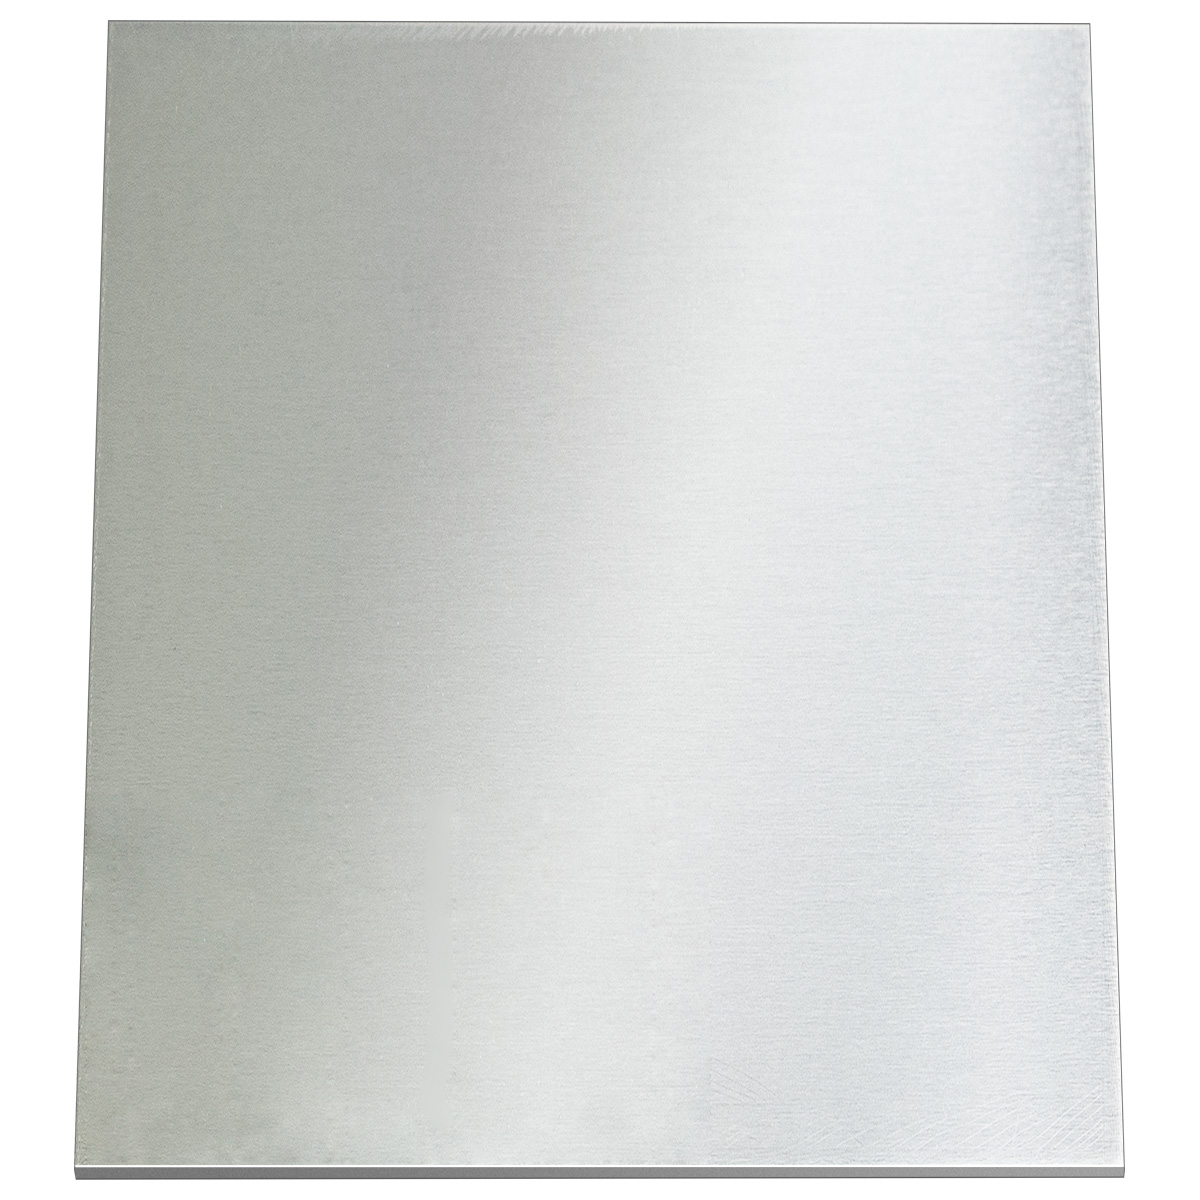 PROMOTION DE PUBLICITÉ Plaques de gravure aluminium, rectangulaire 100 x 160 mm, épaisseur 1 mm, sans colle, sans forage